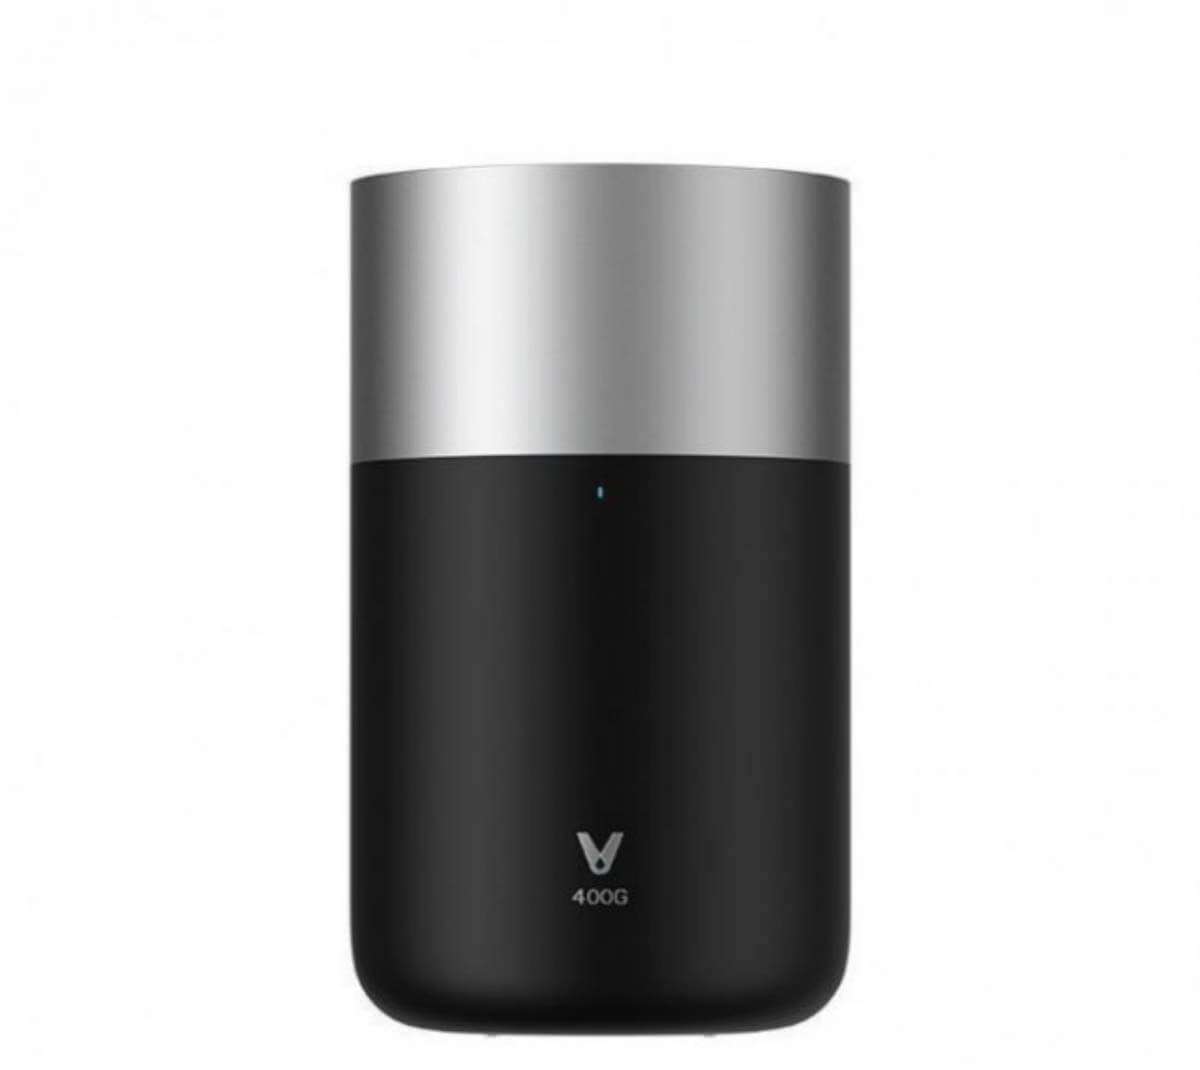 Xiaomi Viomi Smart Water Purifier Mee Pro - Black